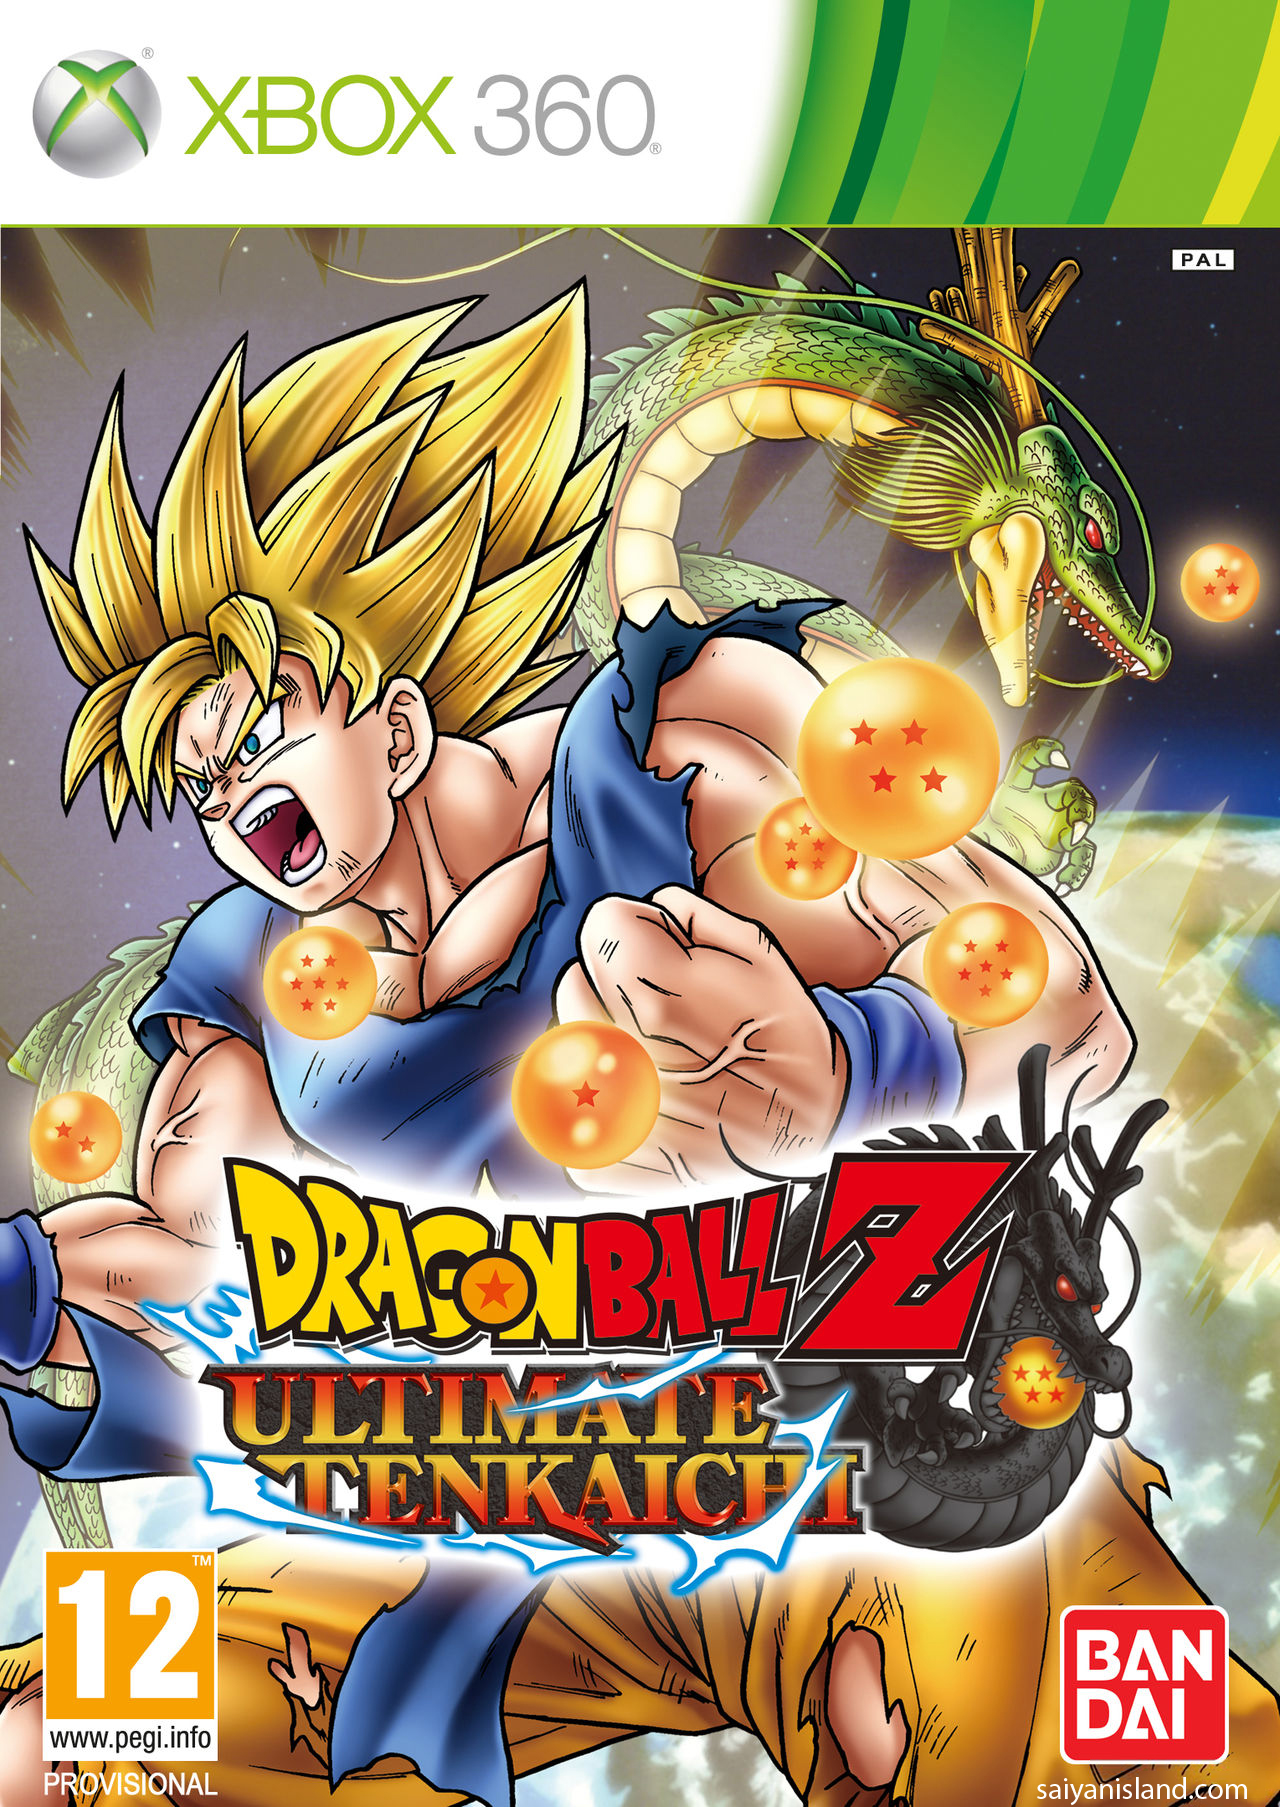 Dragon+ball+z+ultimate+tenkaichi+demo+release+date+usa